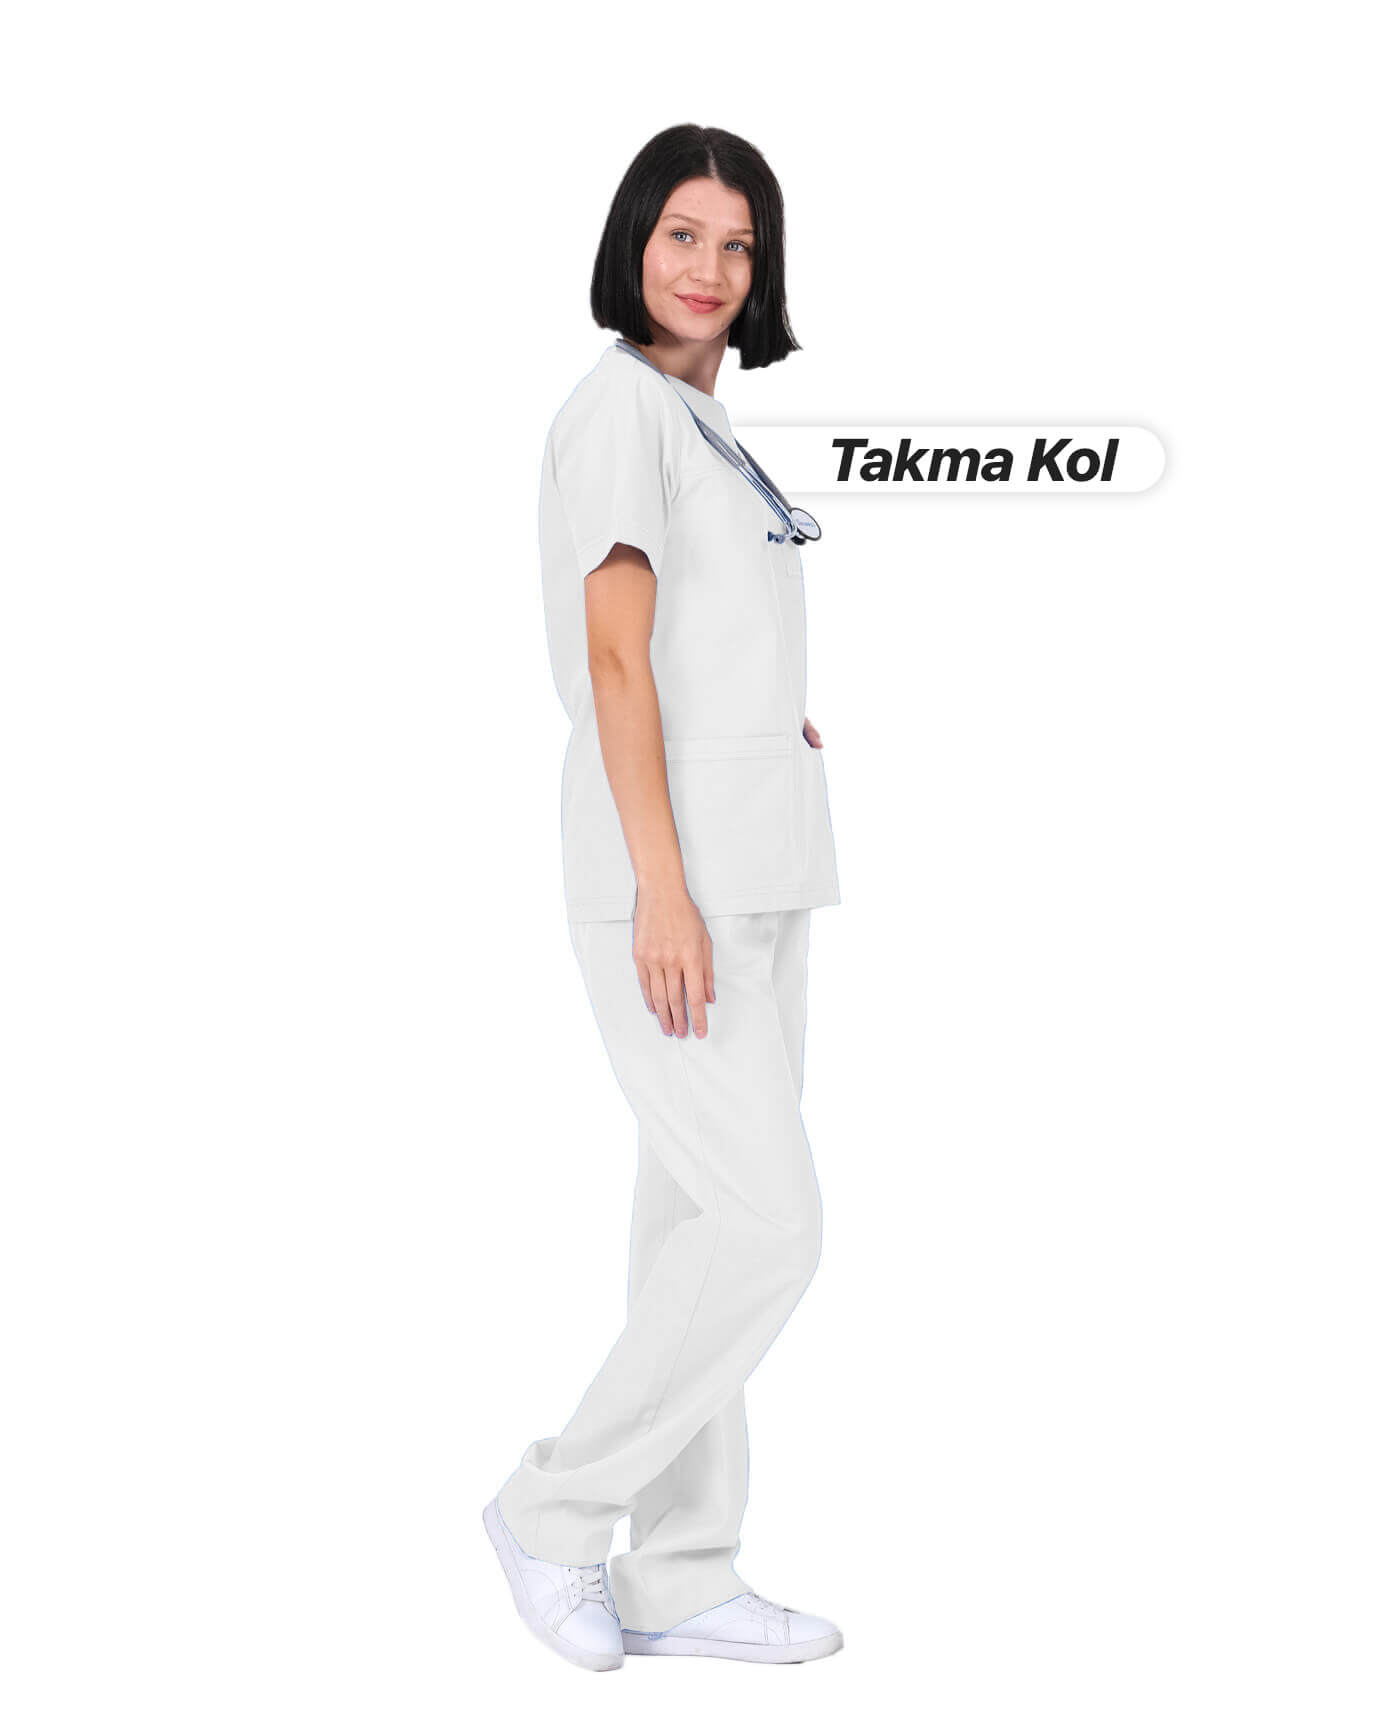 Kadın Gabardin Seri Cerrahi Yaka Takma Kol Beyaz Doktor ve Hemşire Forması Scrubs Takımı